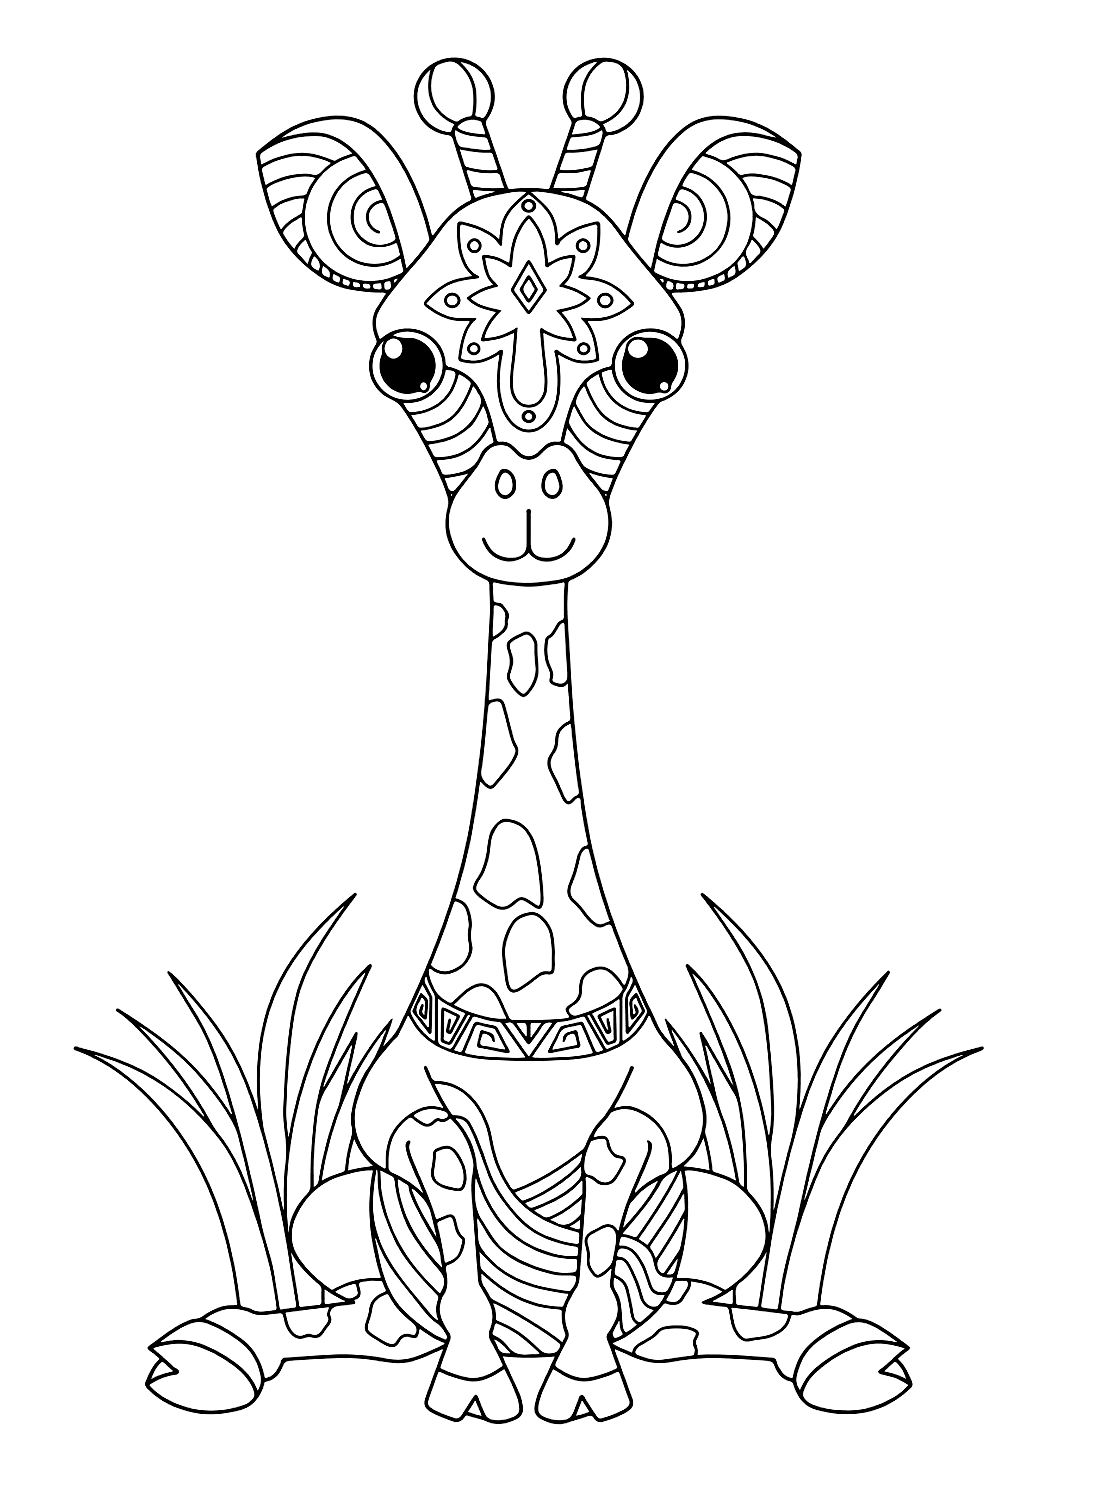 Giraffe coloring sheet